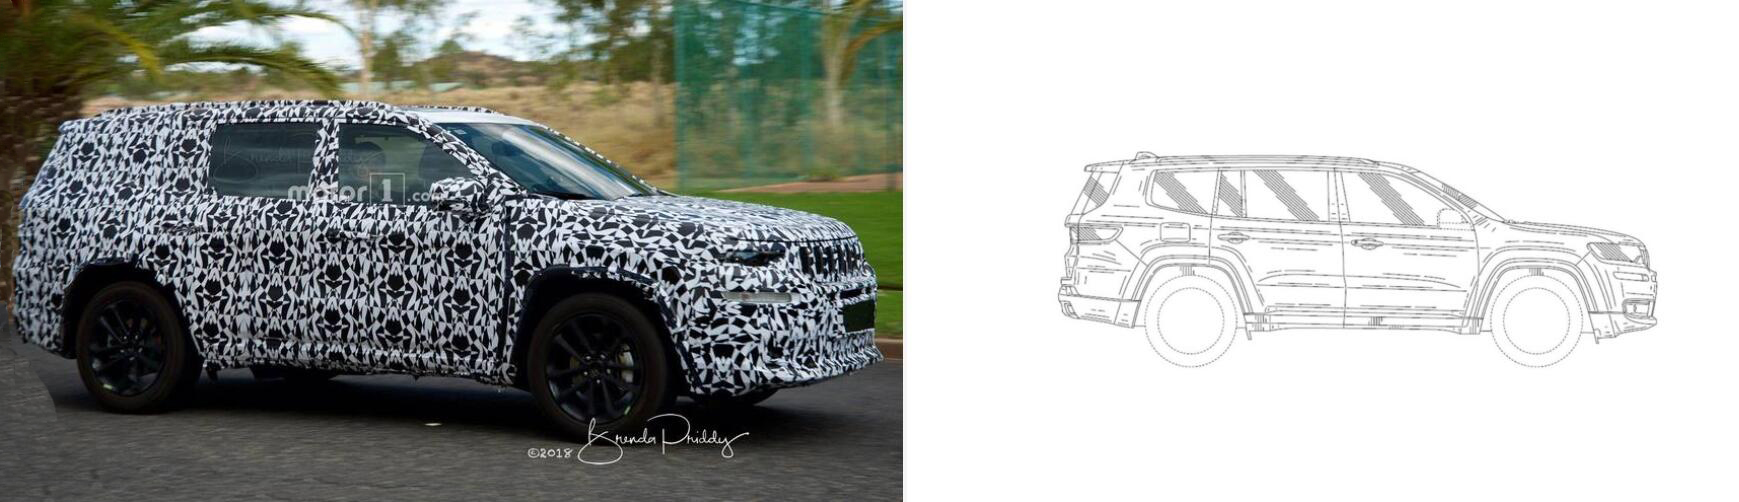 Jeep瓦格耐尔最新谍照曝光 有望2020年上市